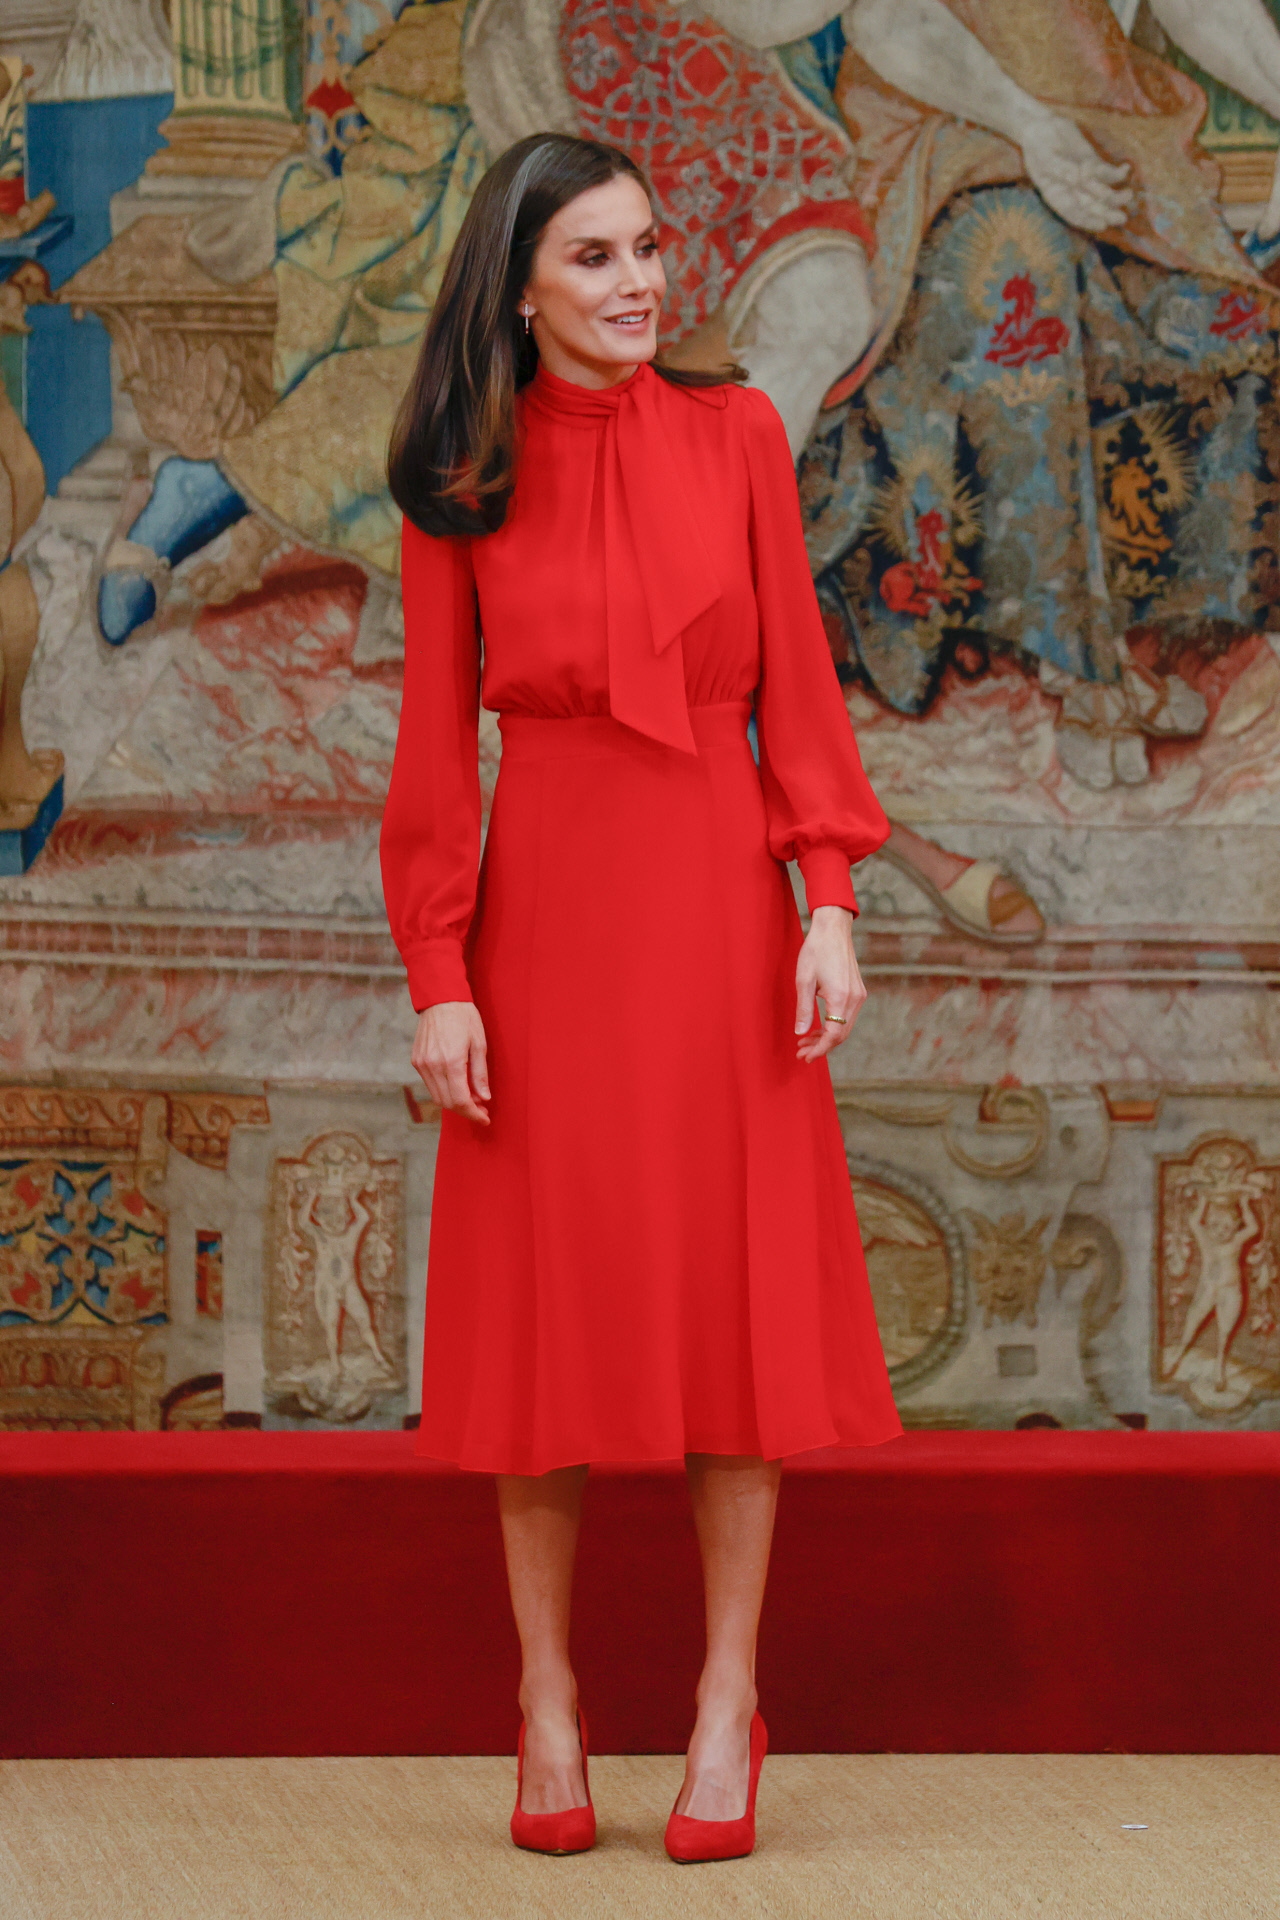 No haga estéreo trimestre Letizia se viste de rojo España con su vestido más elegante | Telva.com